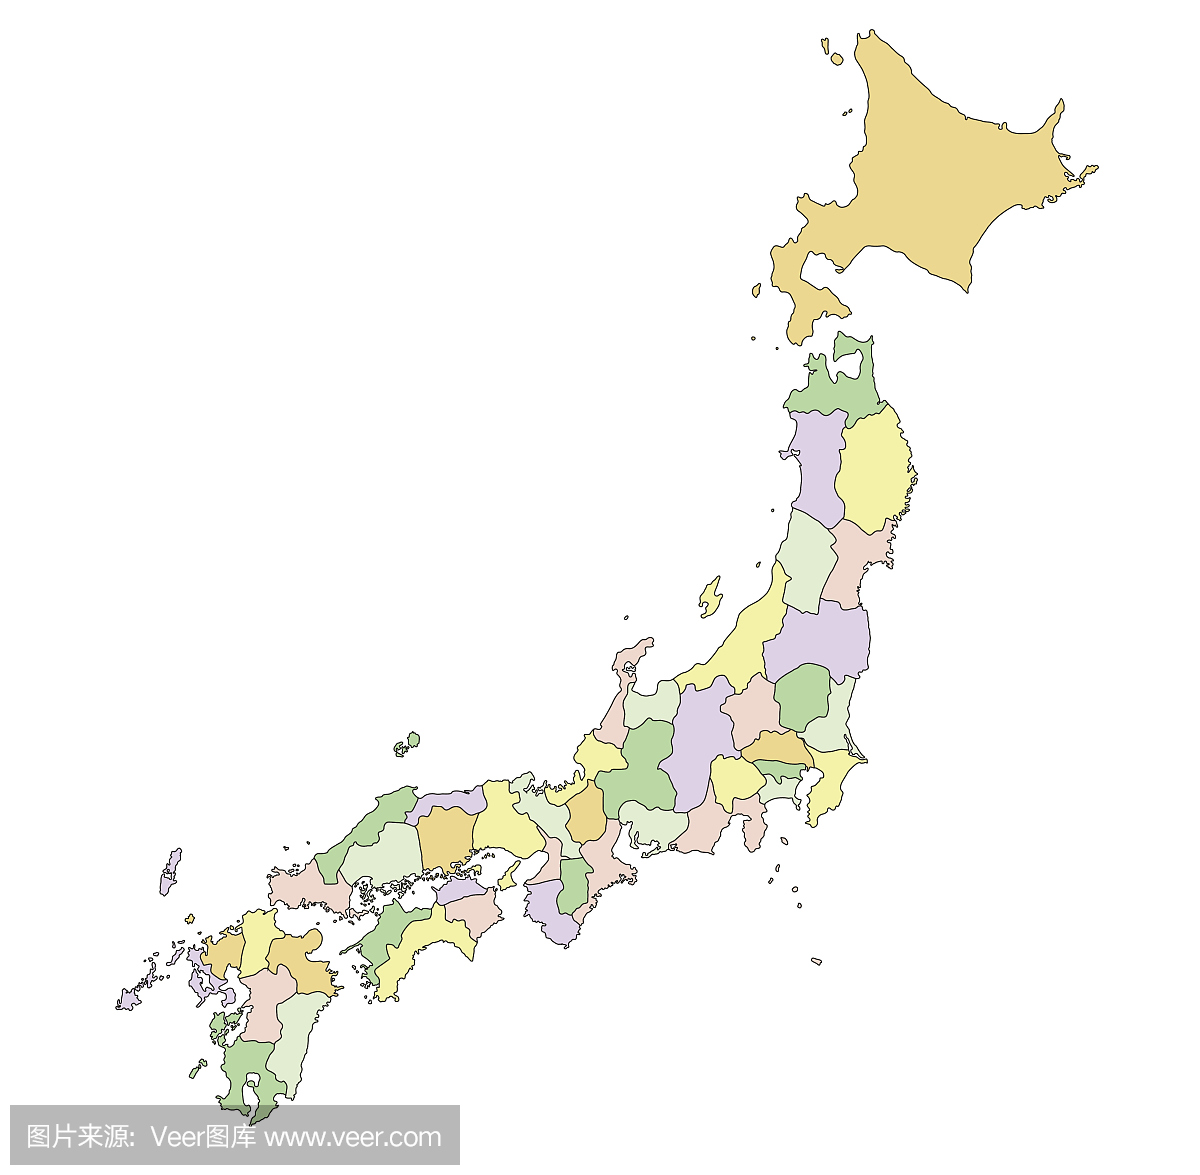 日本地图中文版高清 - 日本地图 - 地理教师网